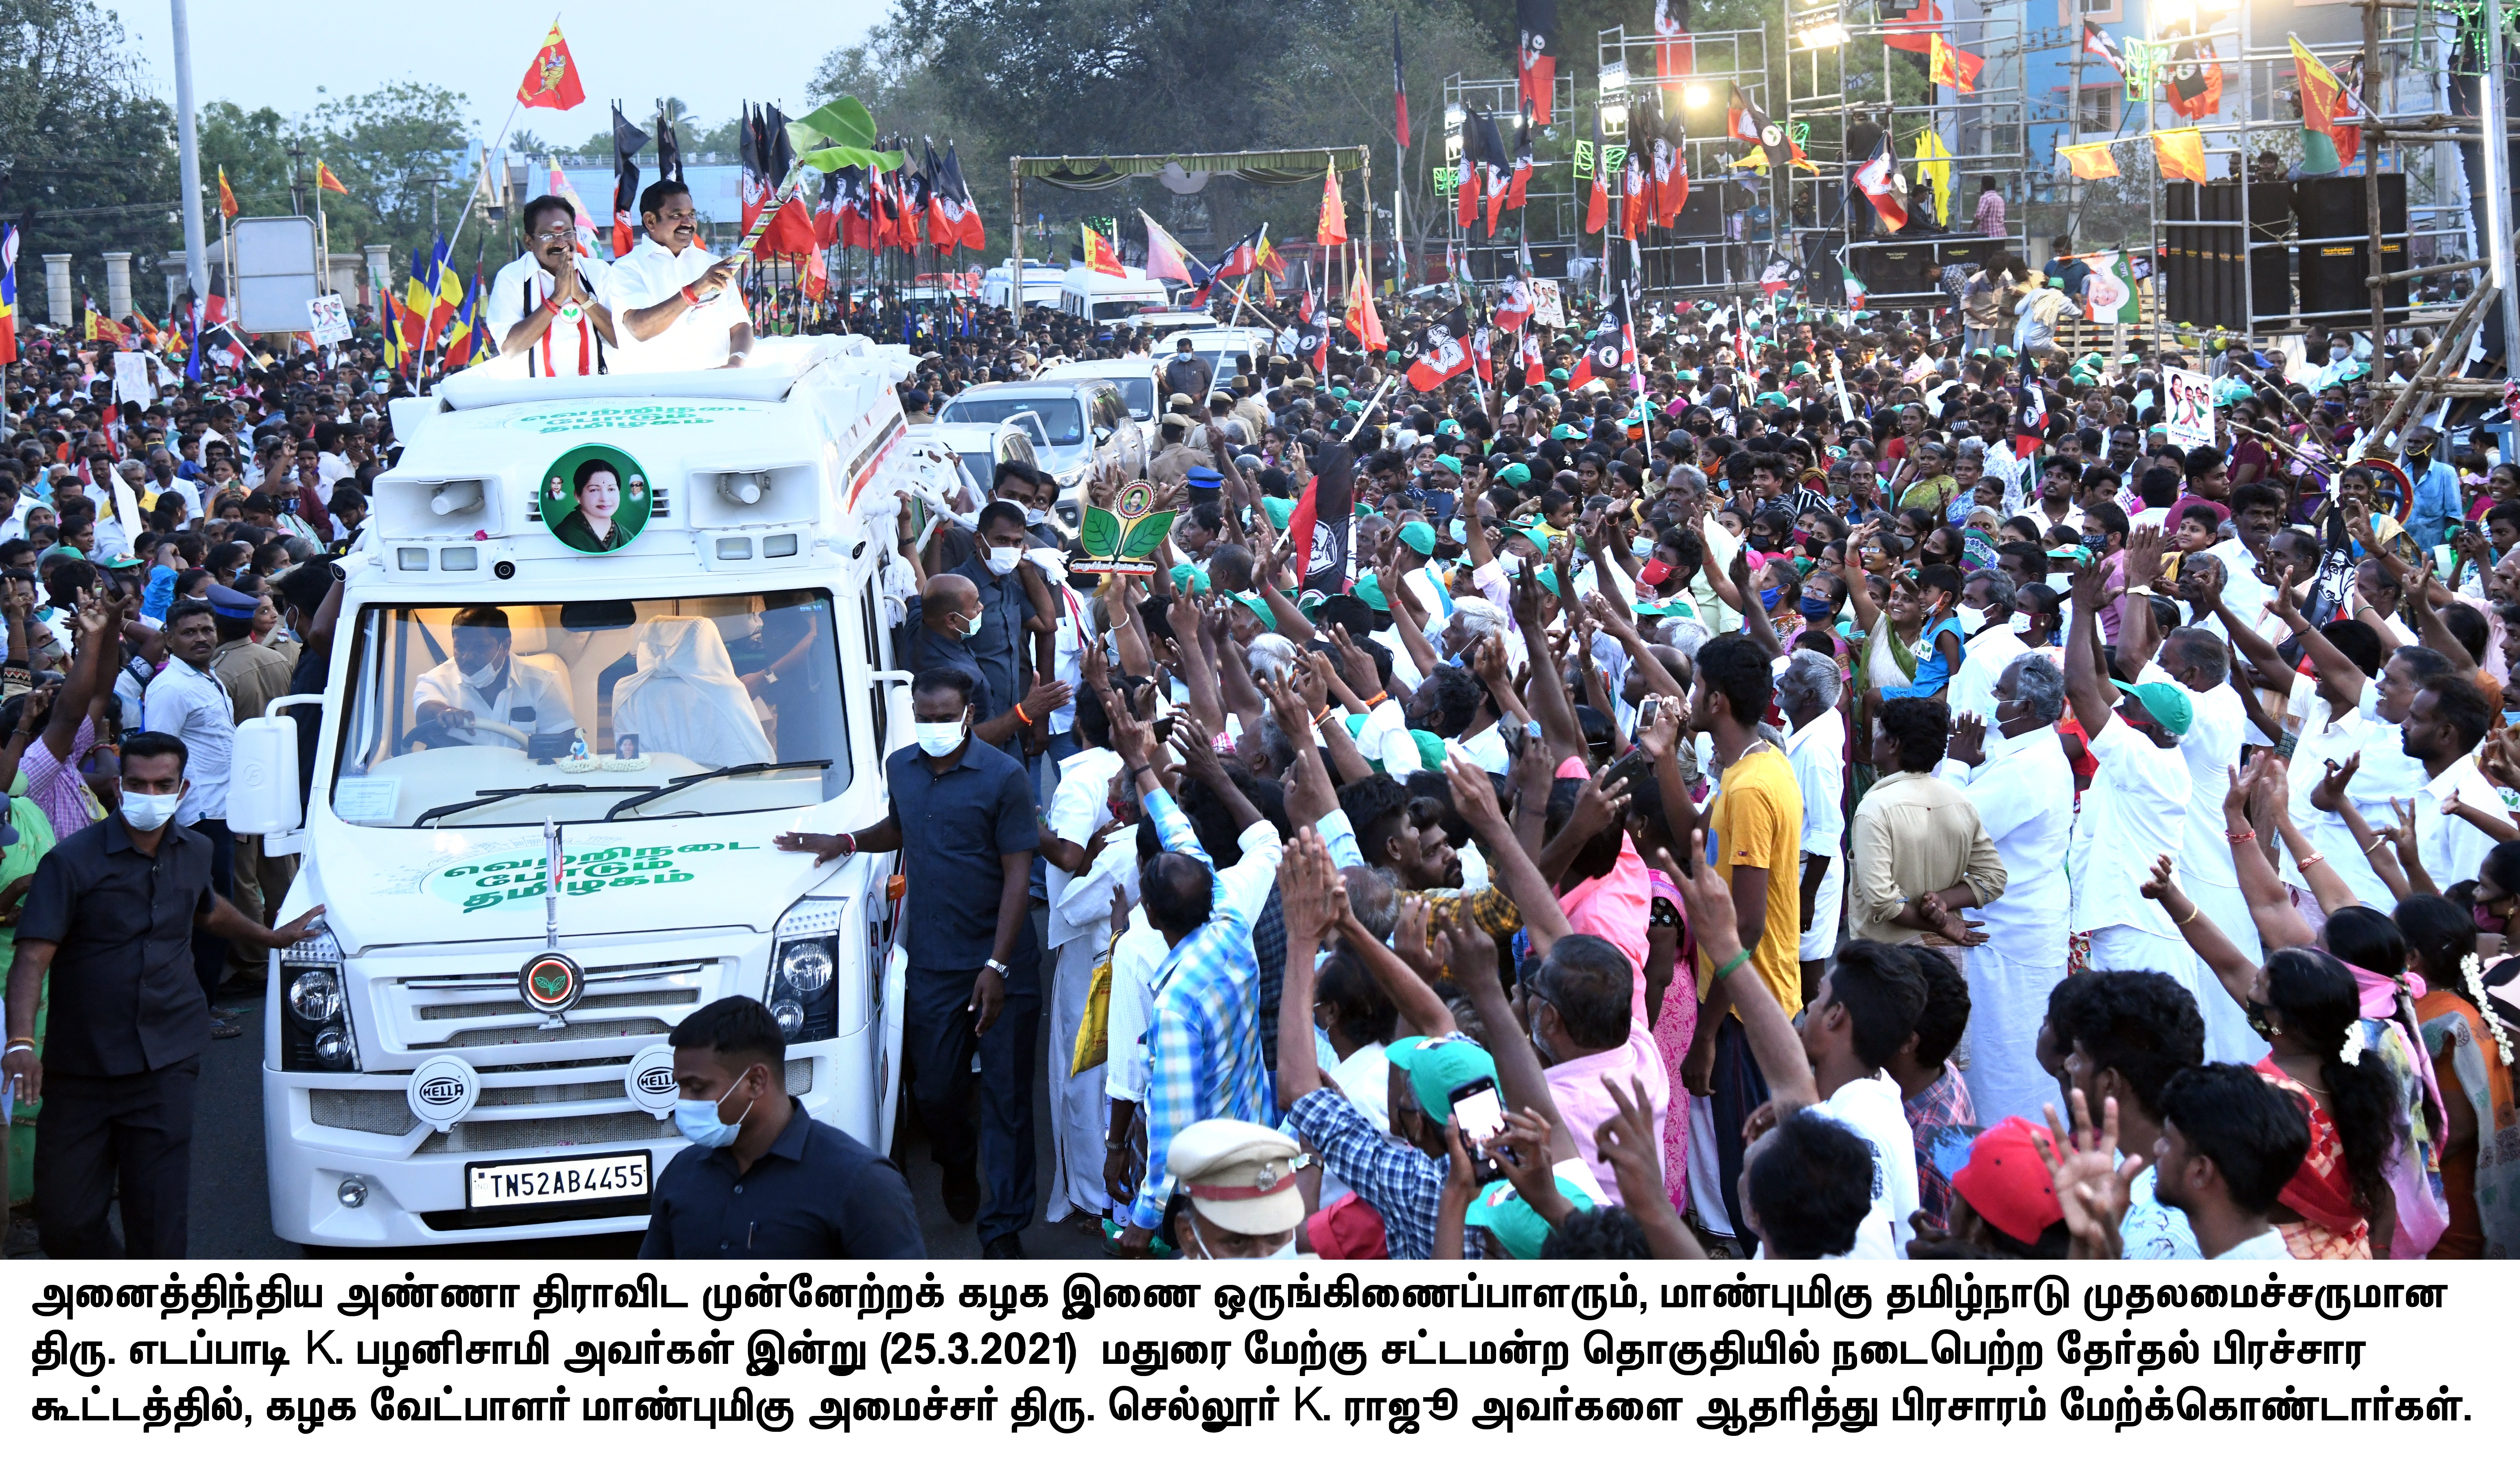 Tamil Nadu Assembly Elections 2021: मेरे शासनकाल के दौरान नहीं हुई जाति व सांप्रदायिक झड़प: मुख्यमंत्री